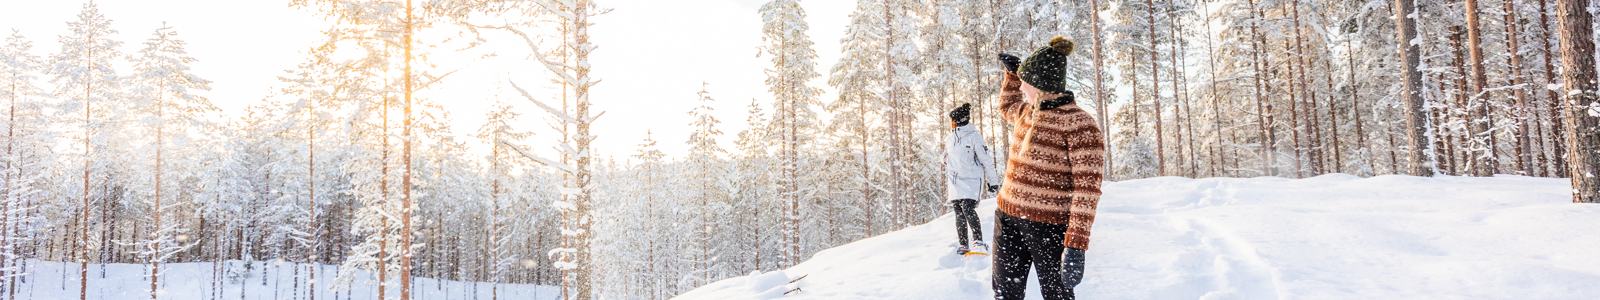 Winactie Finland winter